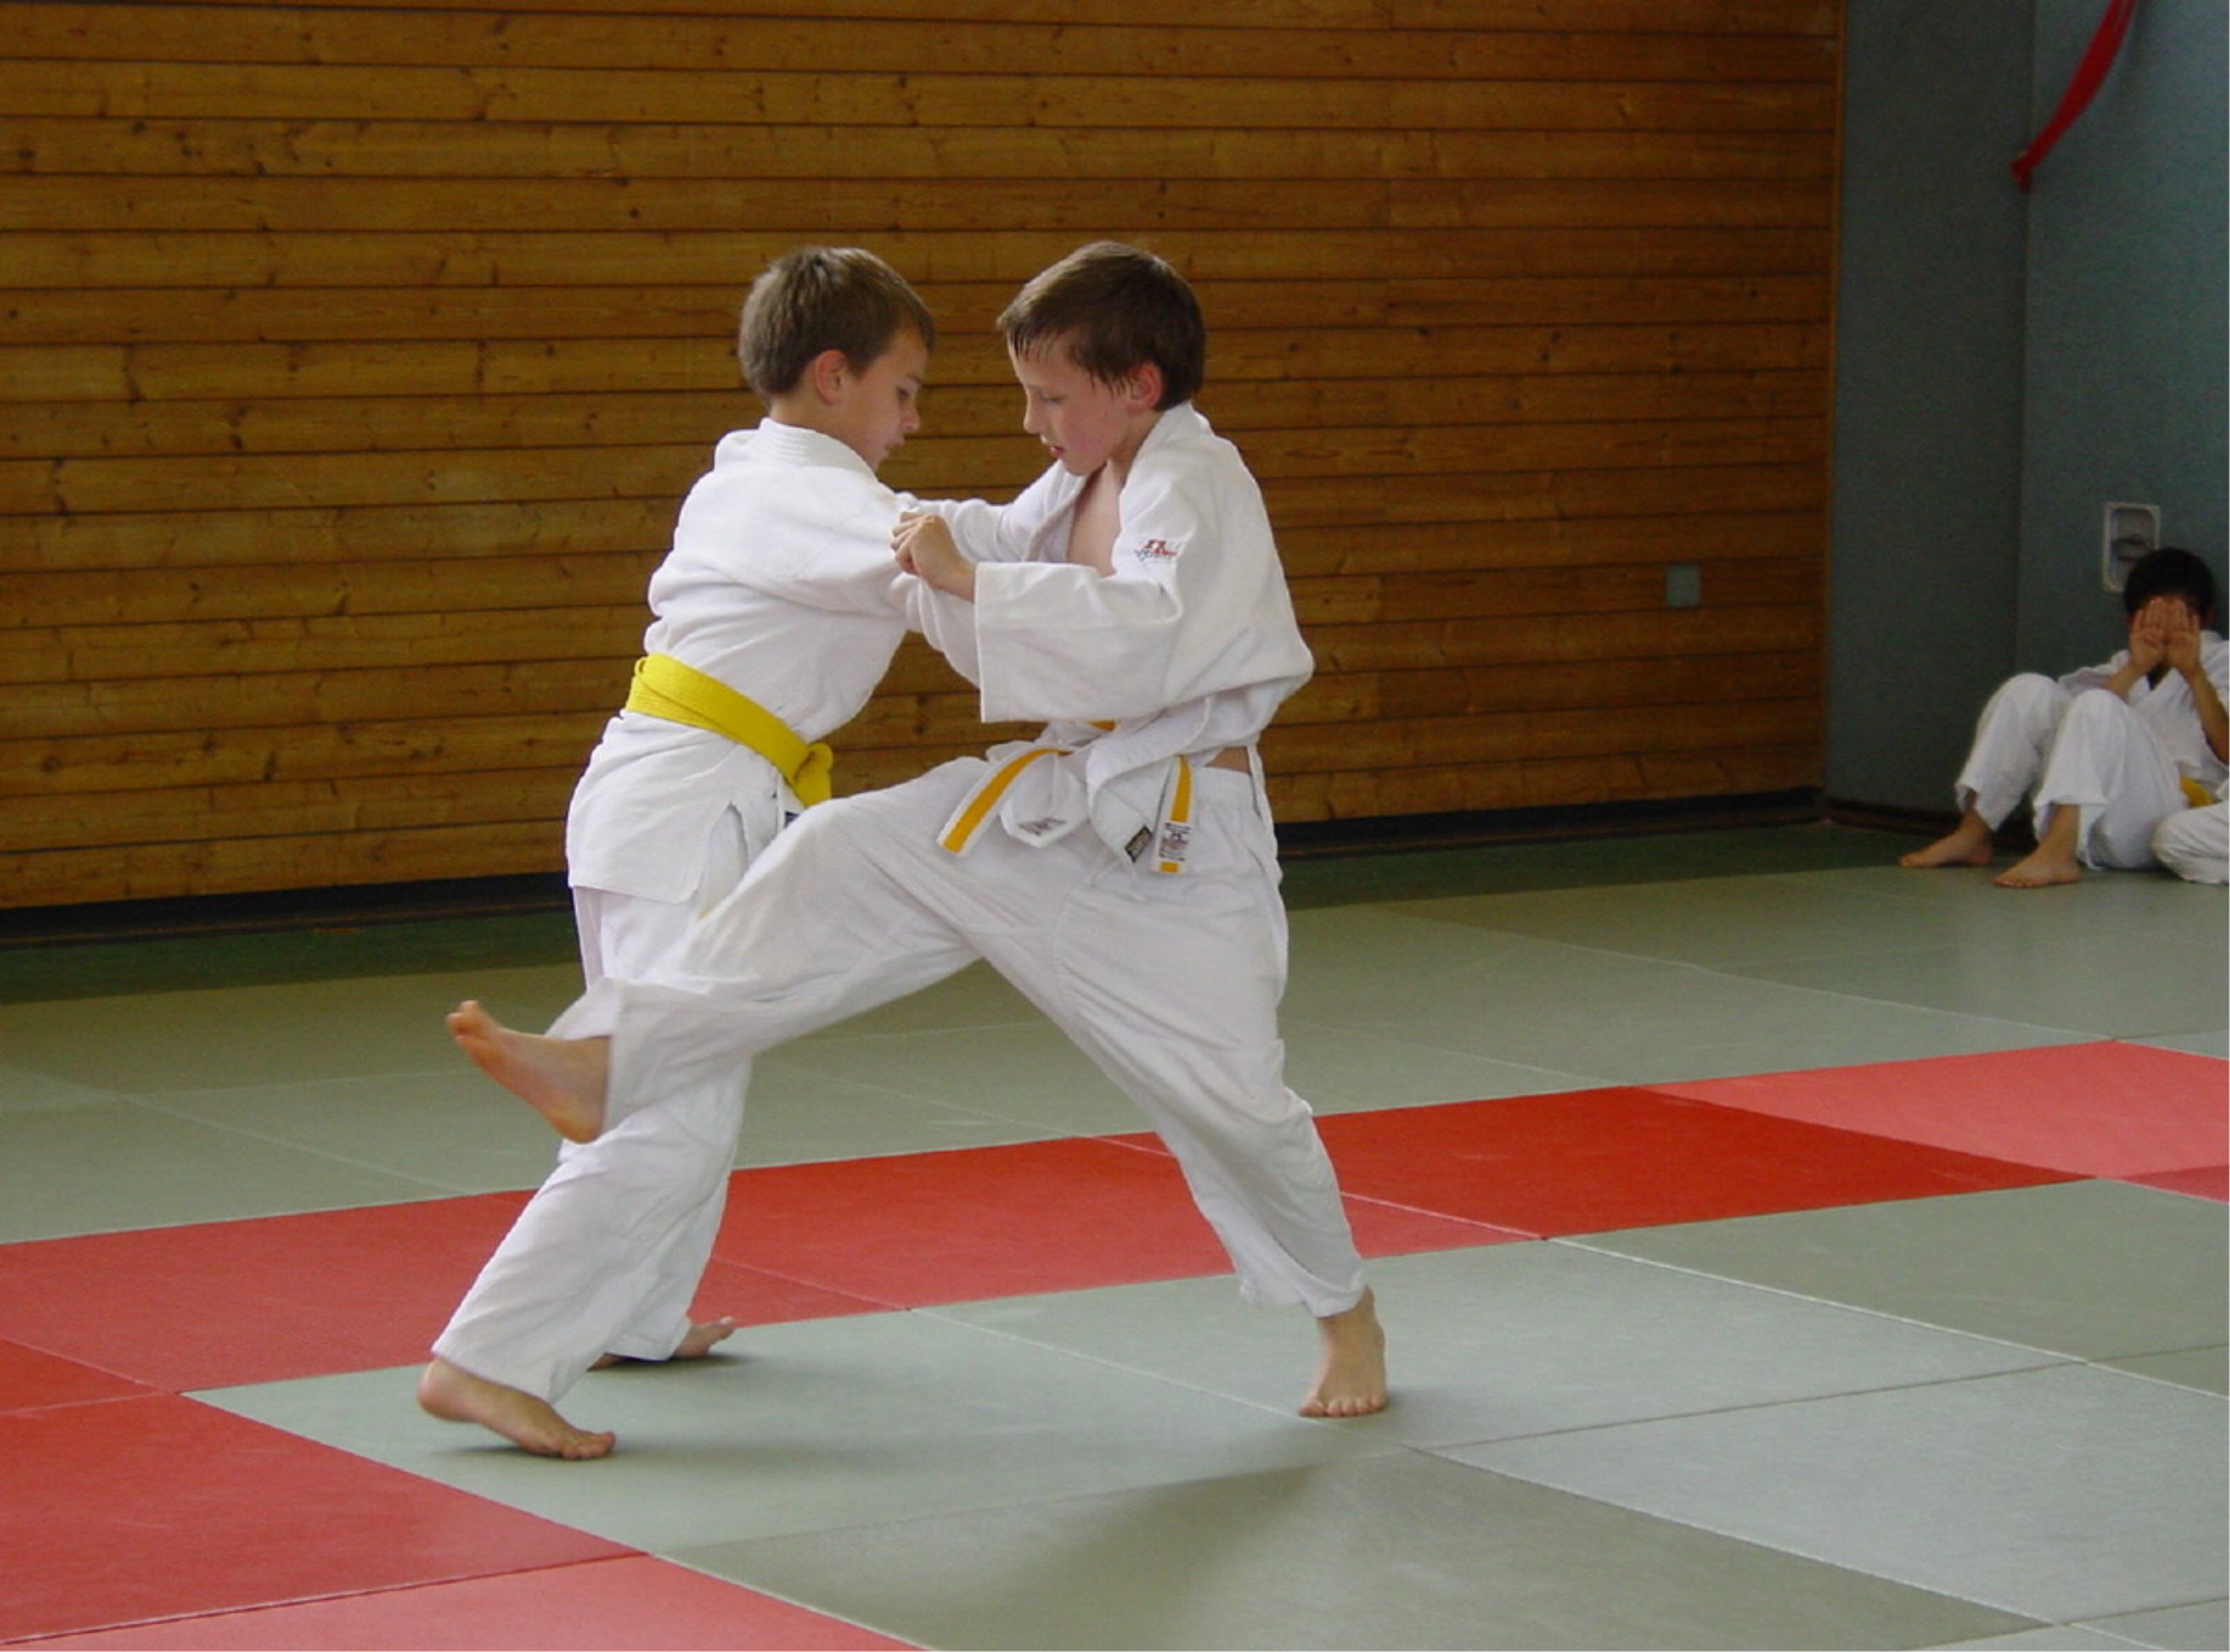 Incontro di judo tra giovani atleti